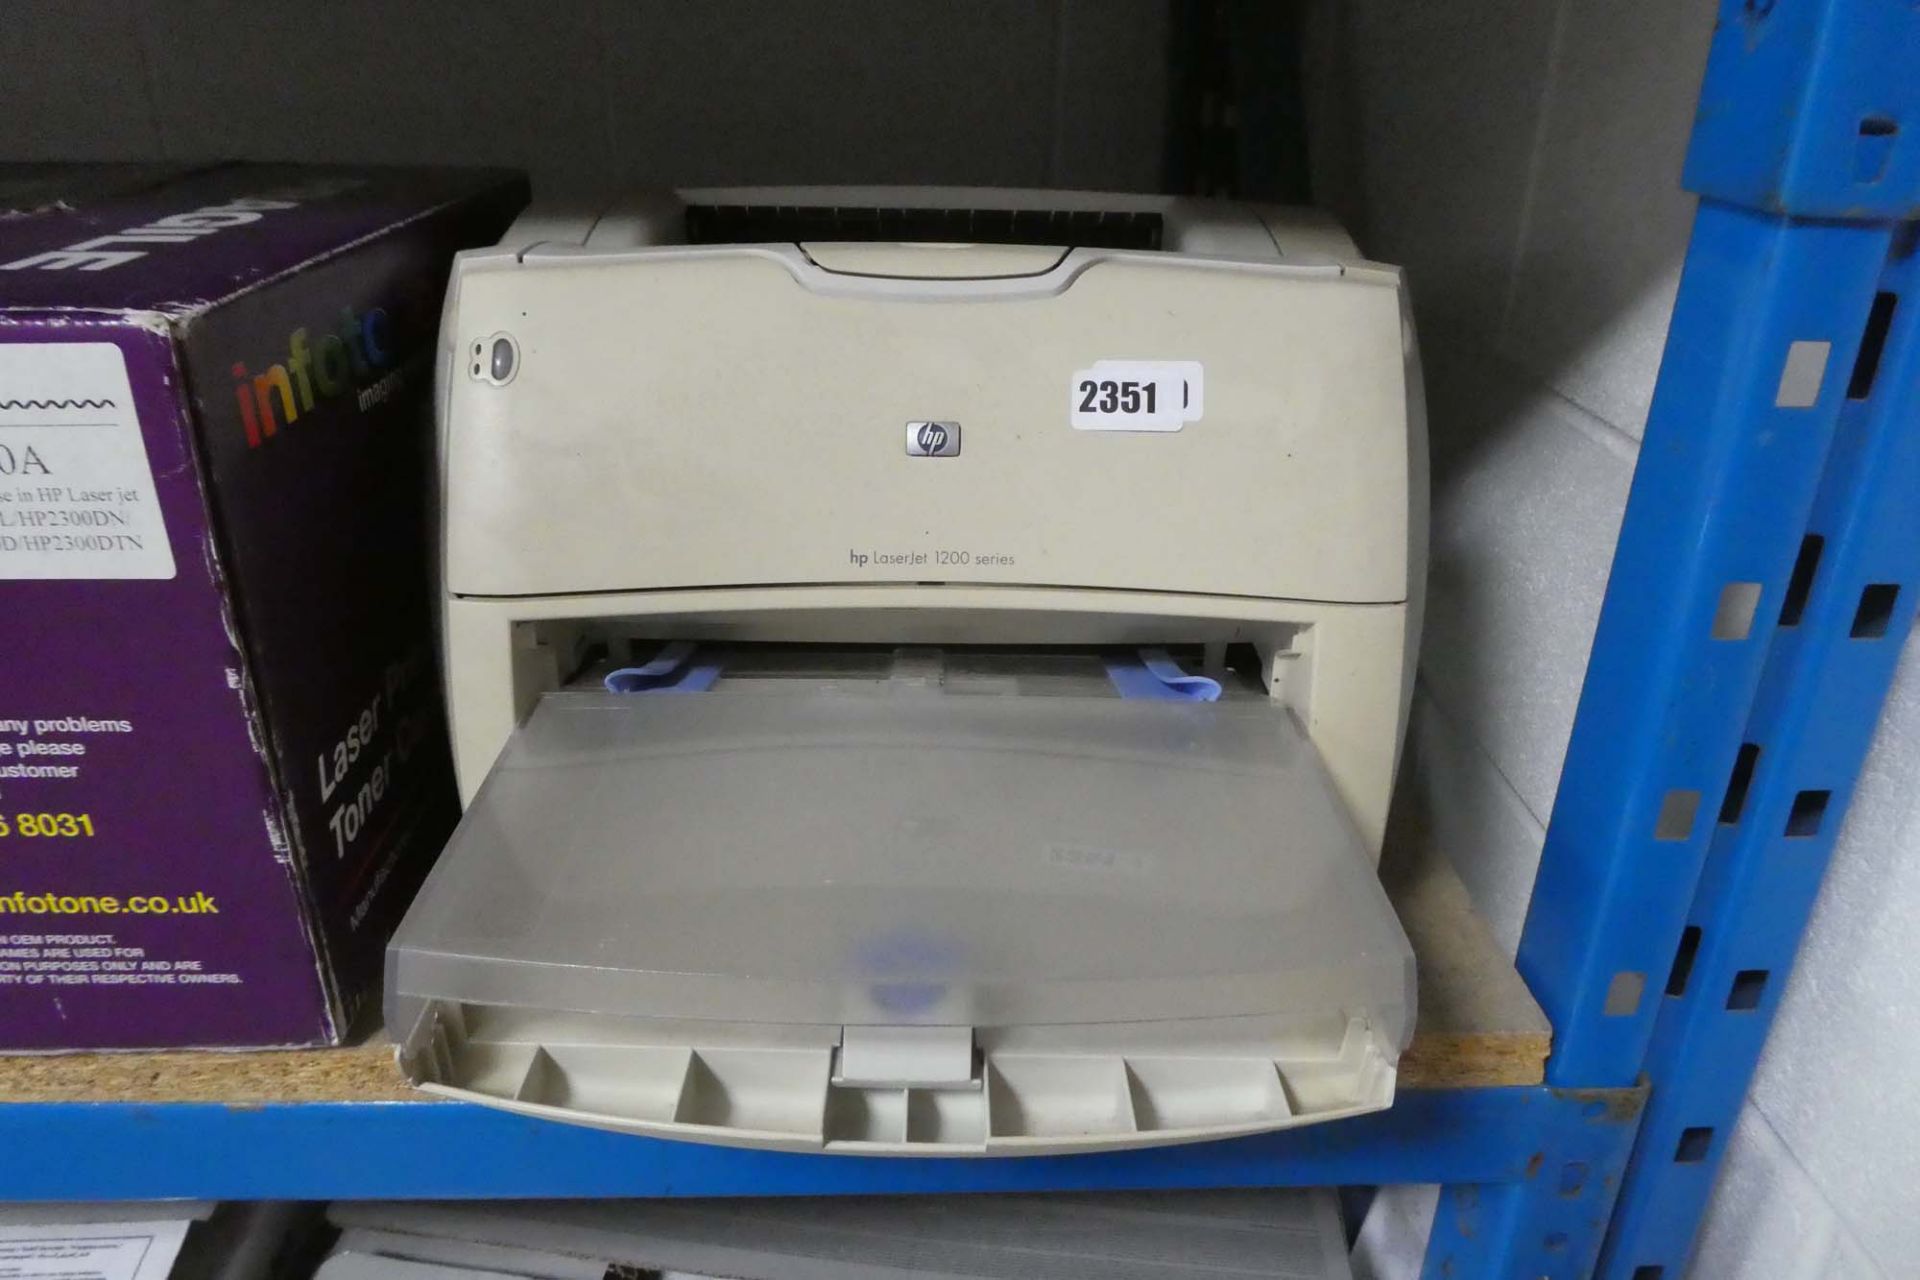 2200 - HP LaserJet 1200 Series printer